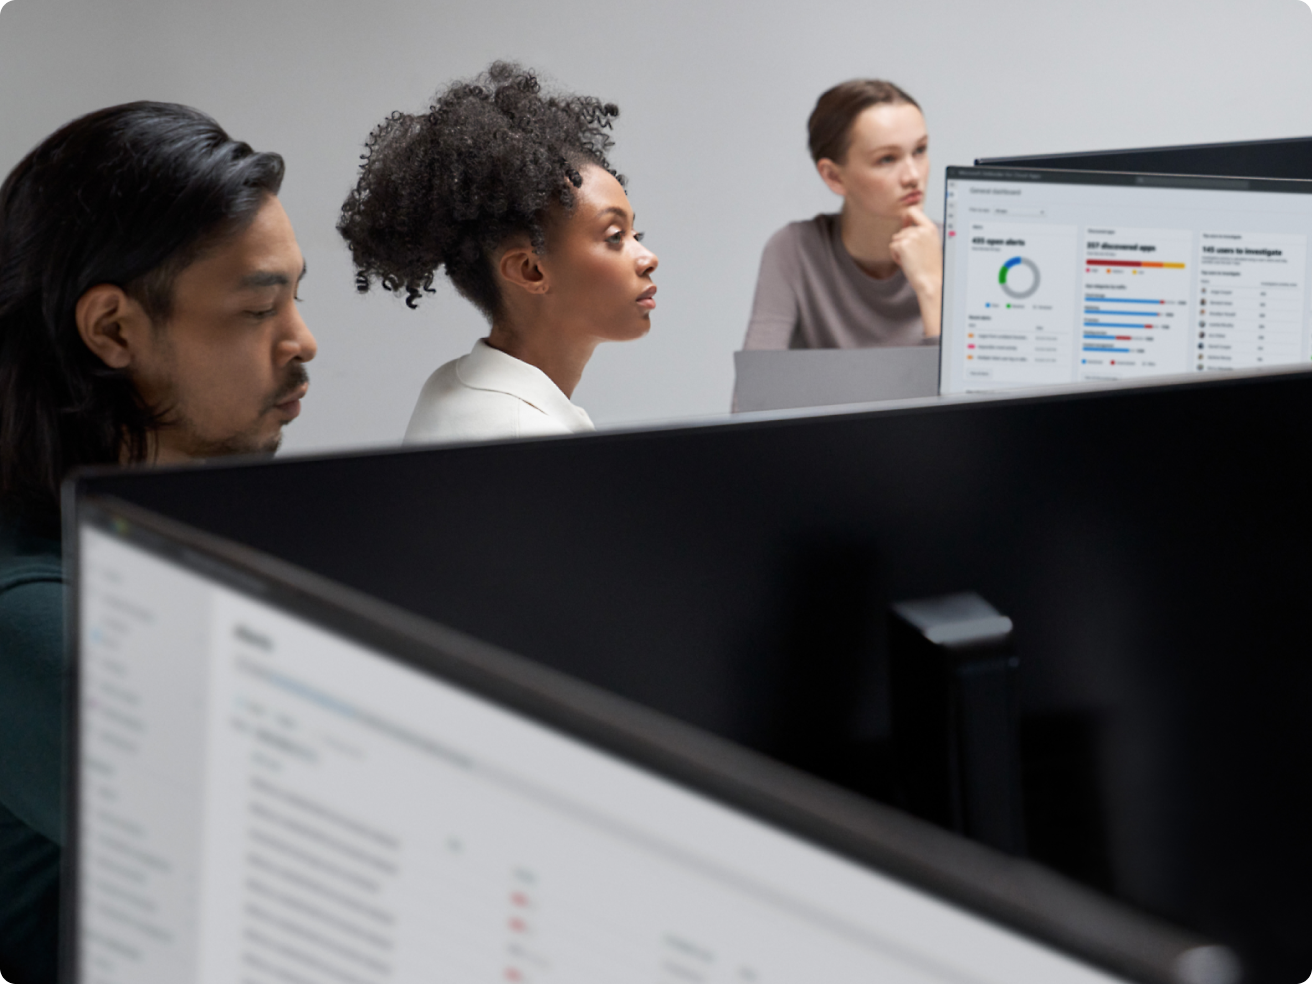 Trois employés de bureau concentrés sur des écrans d’ordinateur affichant des graphiques et des données dans un bureau moderne.